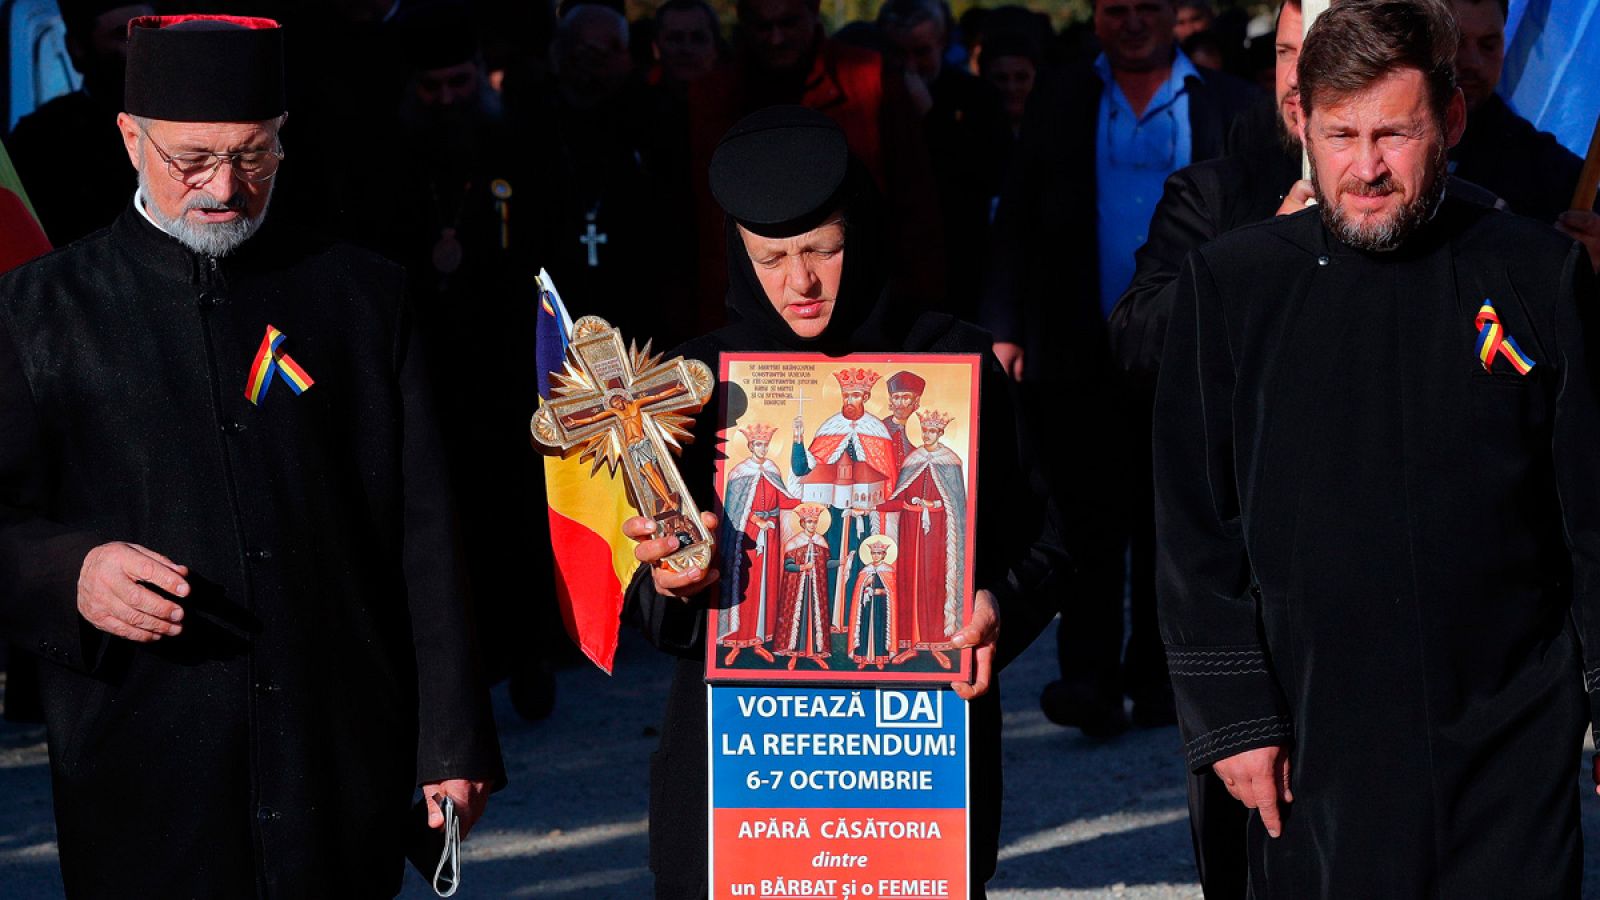 Una monja ortodoxa sostiene una cruz y diferentes iconos religiosos durante una marcha para vetar el matrimonio entre personas del mismo sexo en Draganesti Olt, Rumanía